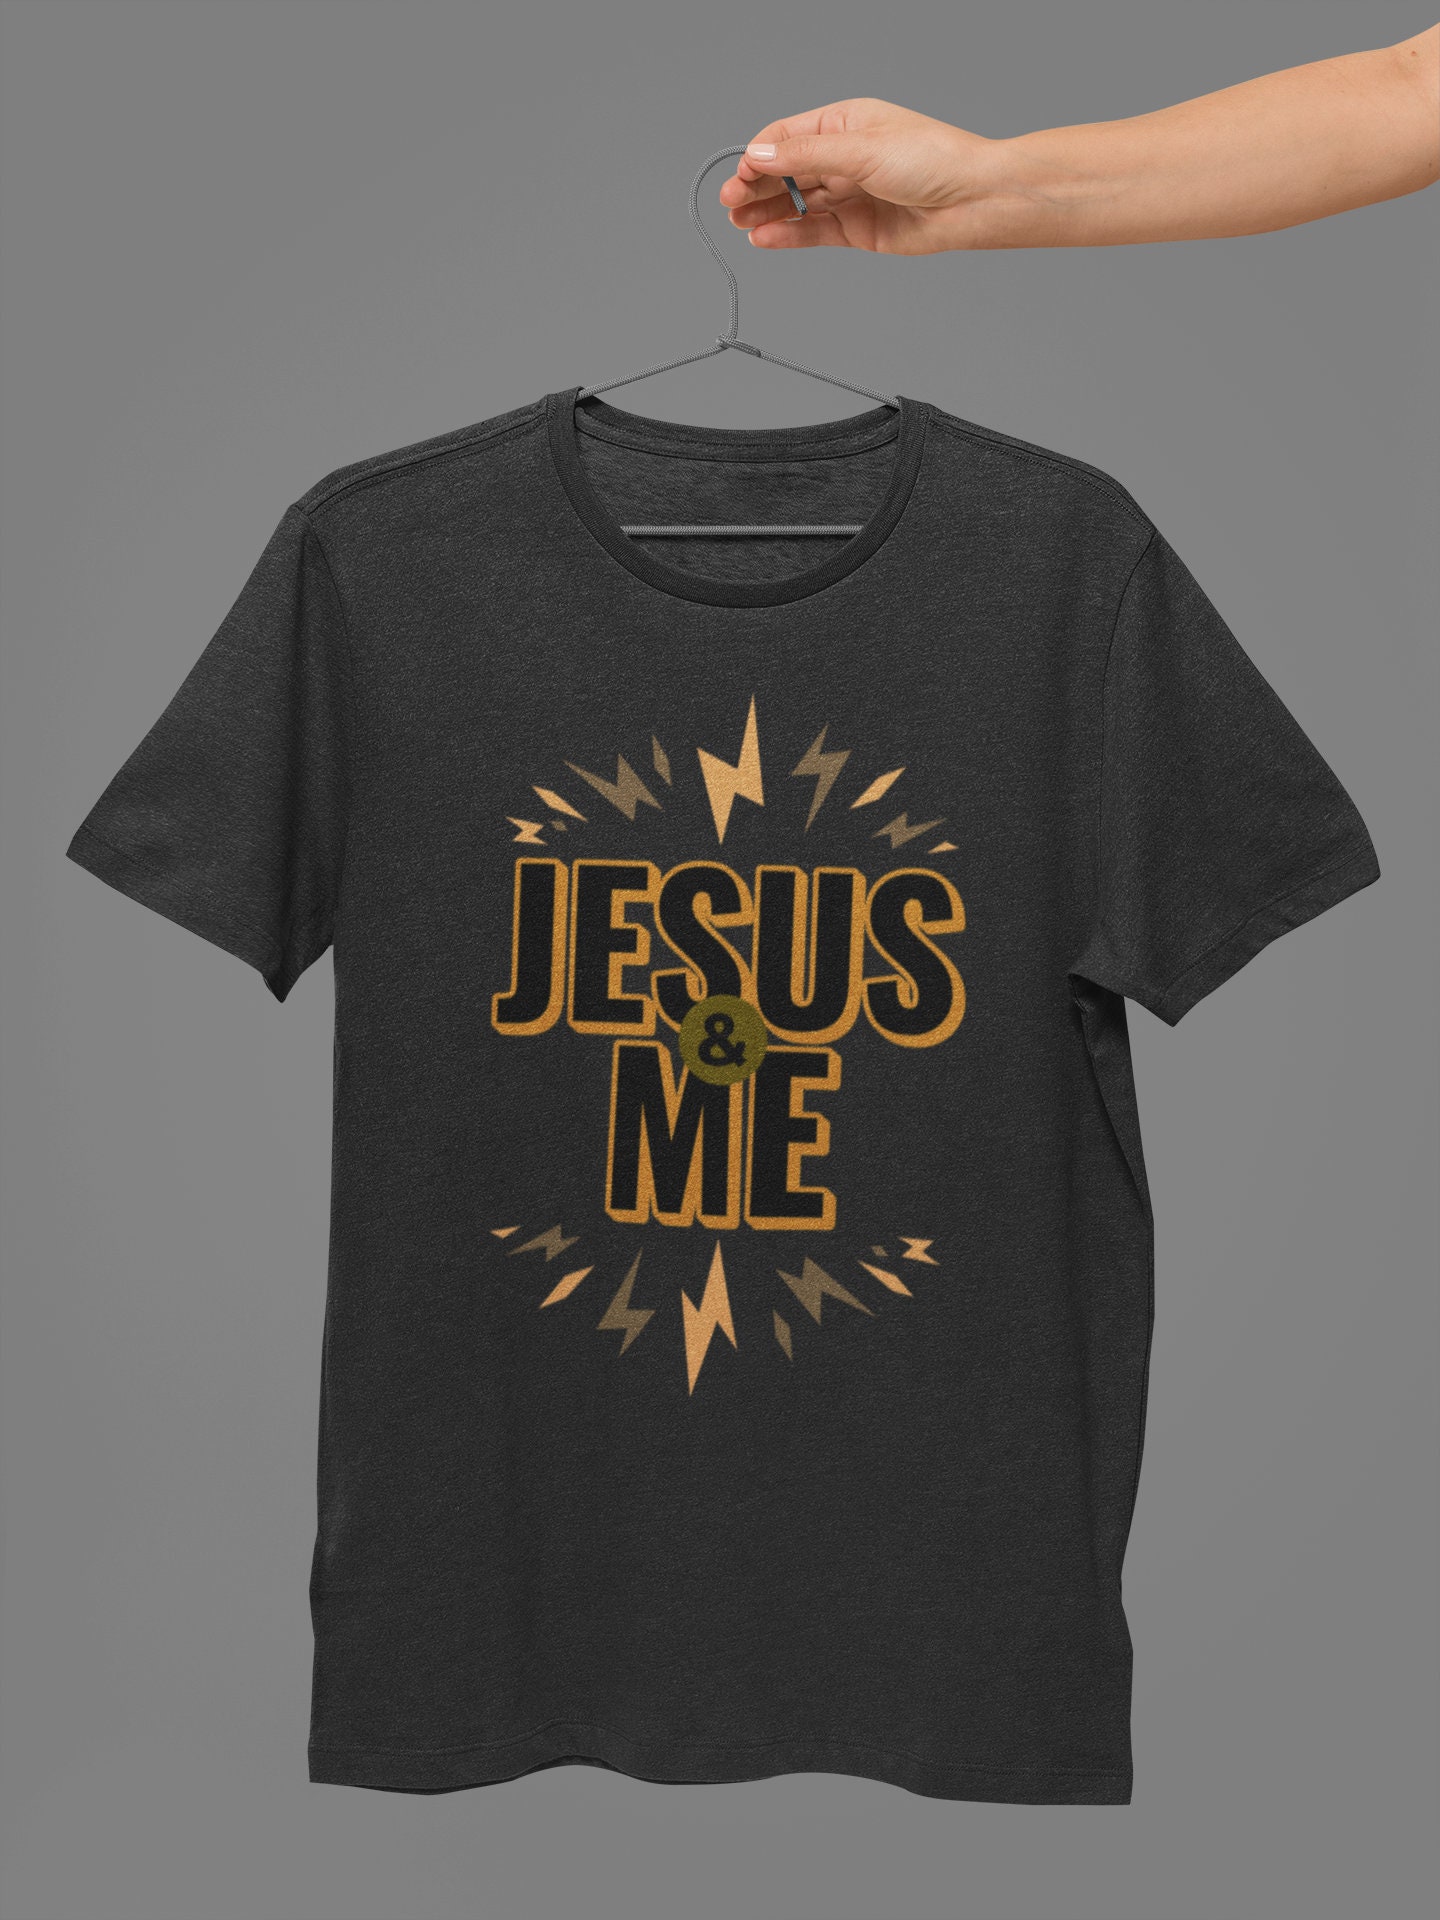 T-shirts For Men Shirt For Women jesus love religion cross i | Etsy